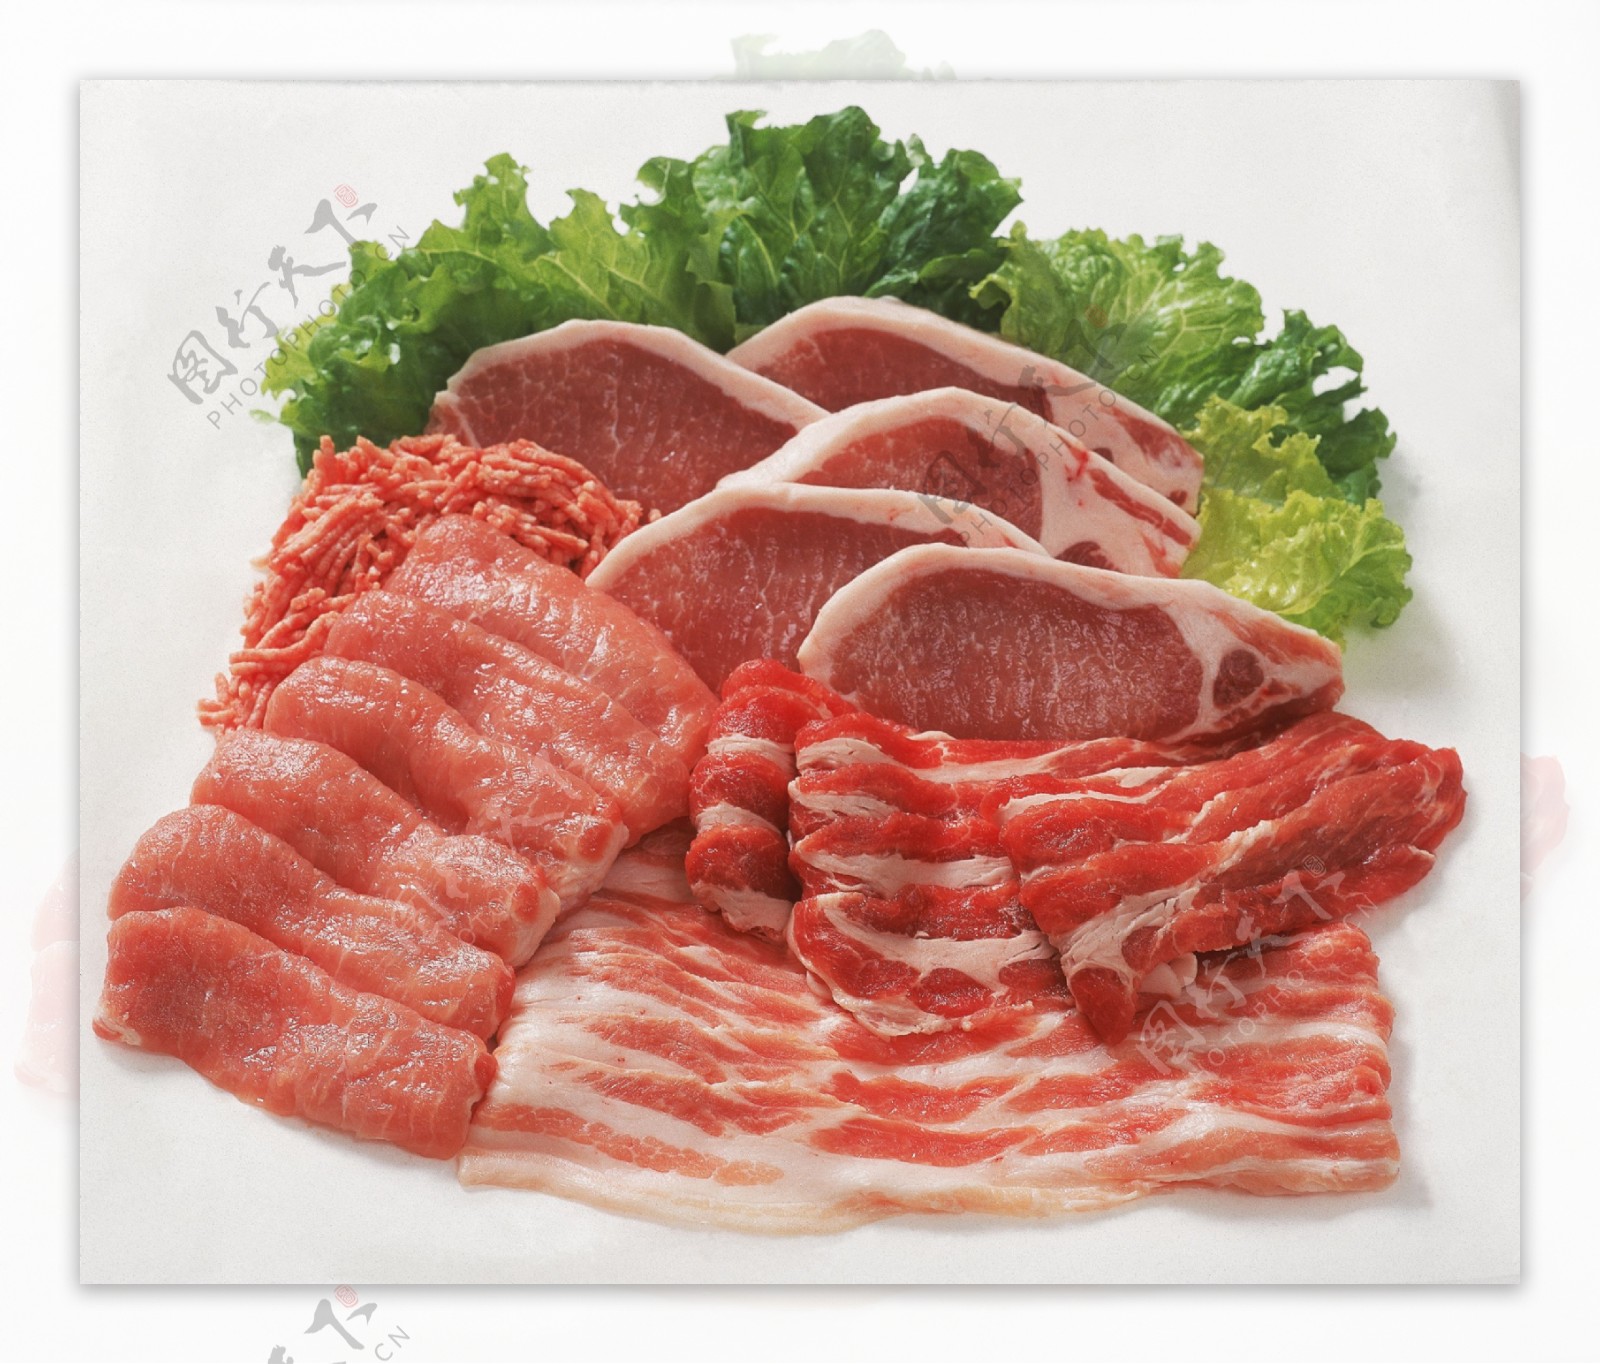 各种肉类食材和生菜叶图片